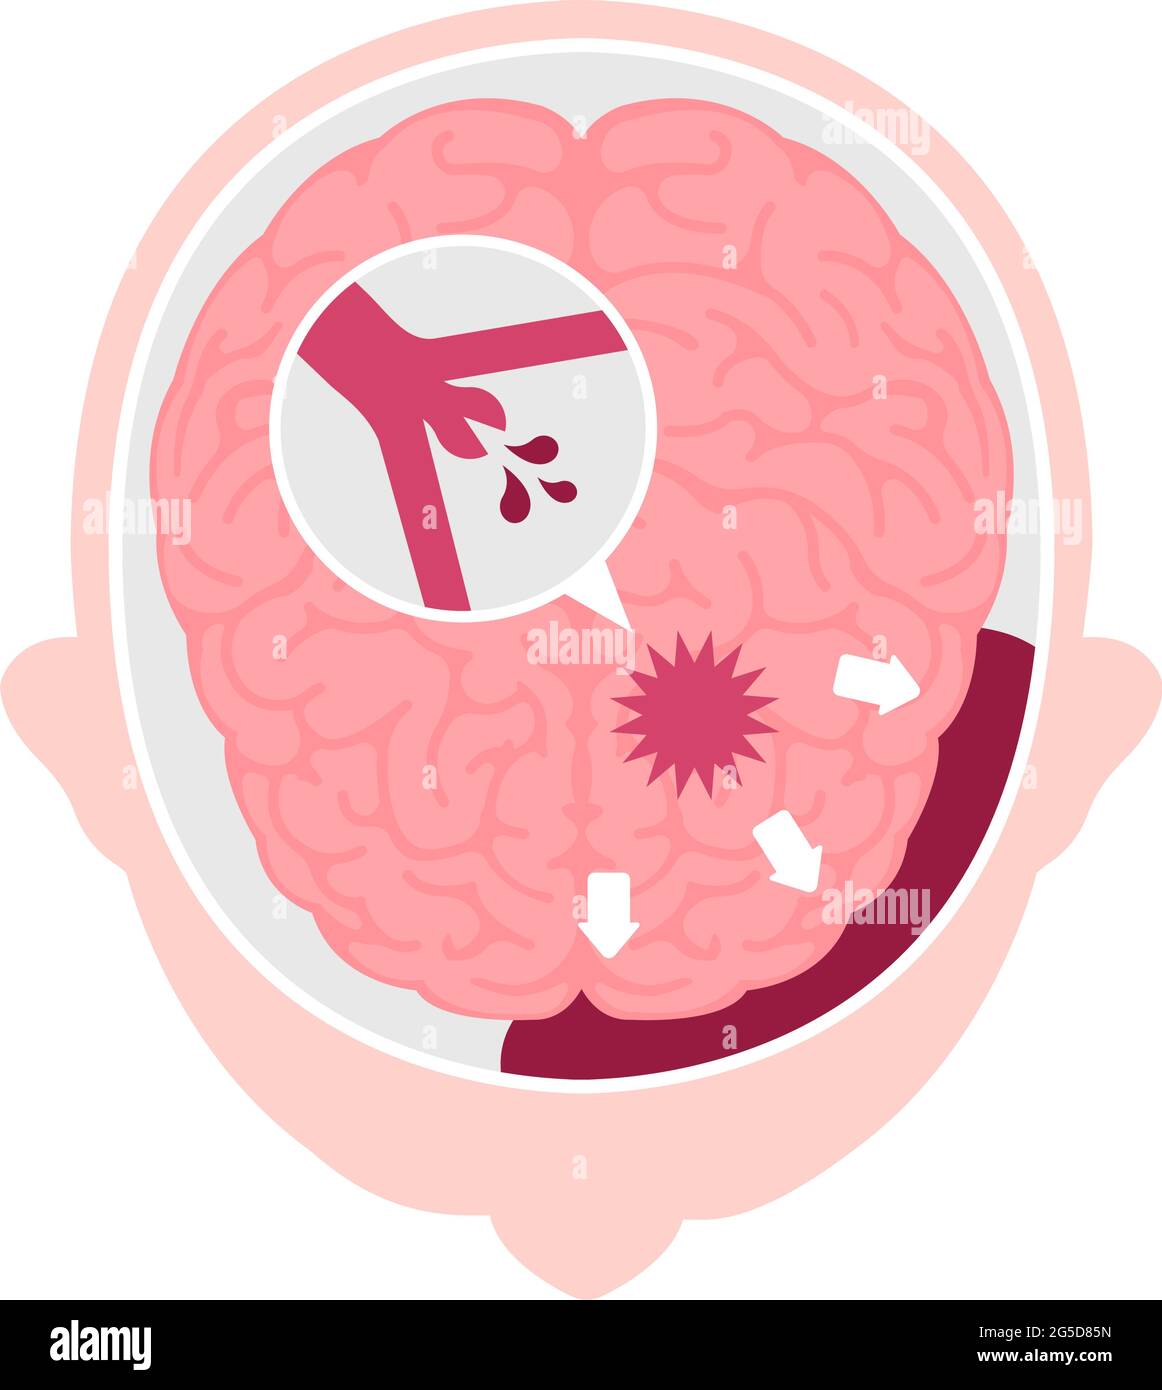 Types d'illustration du vecteur d'AVC cérébral humain | hémorragie sous-arachnoïdienne Illustration de Vecteur